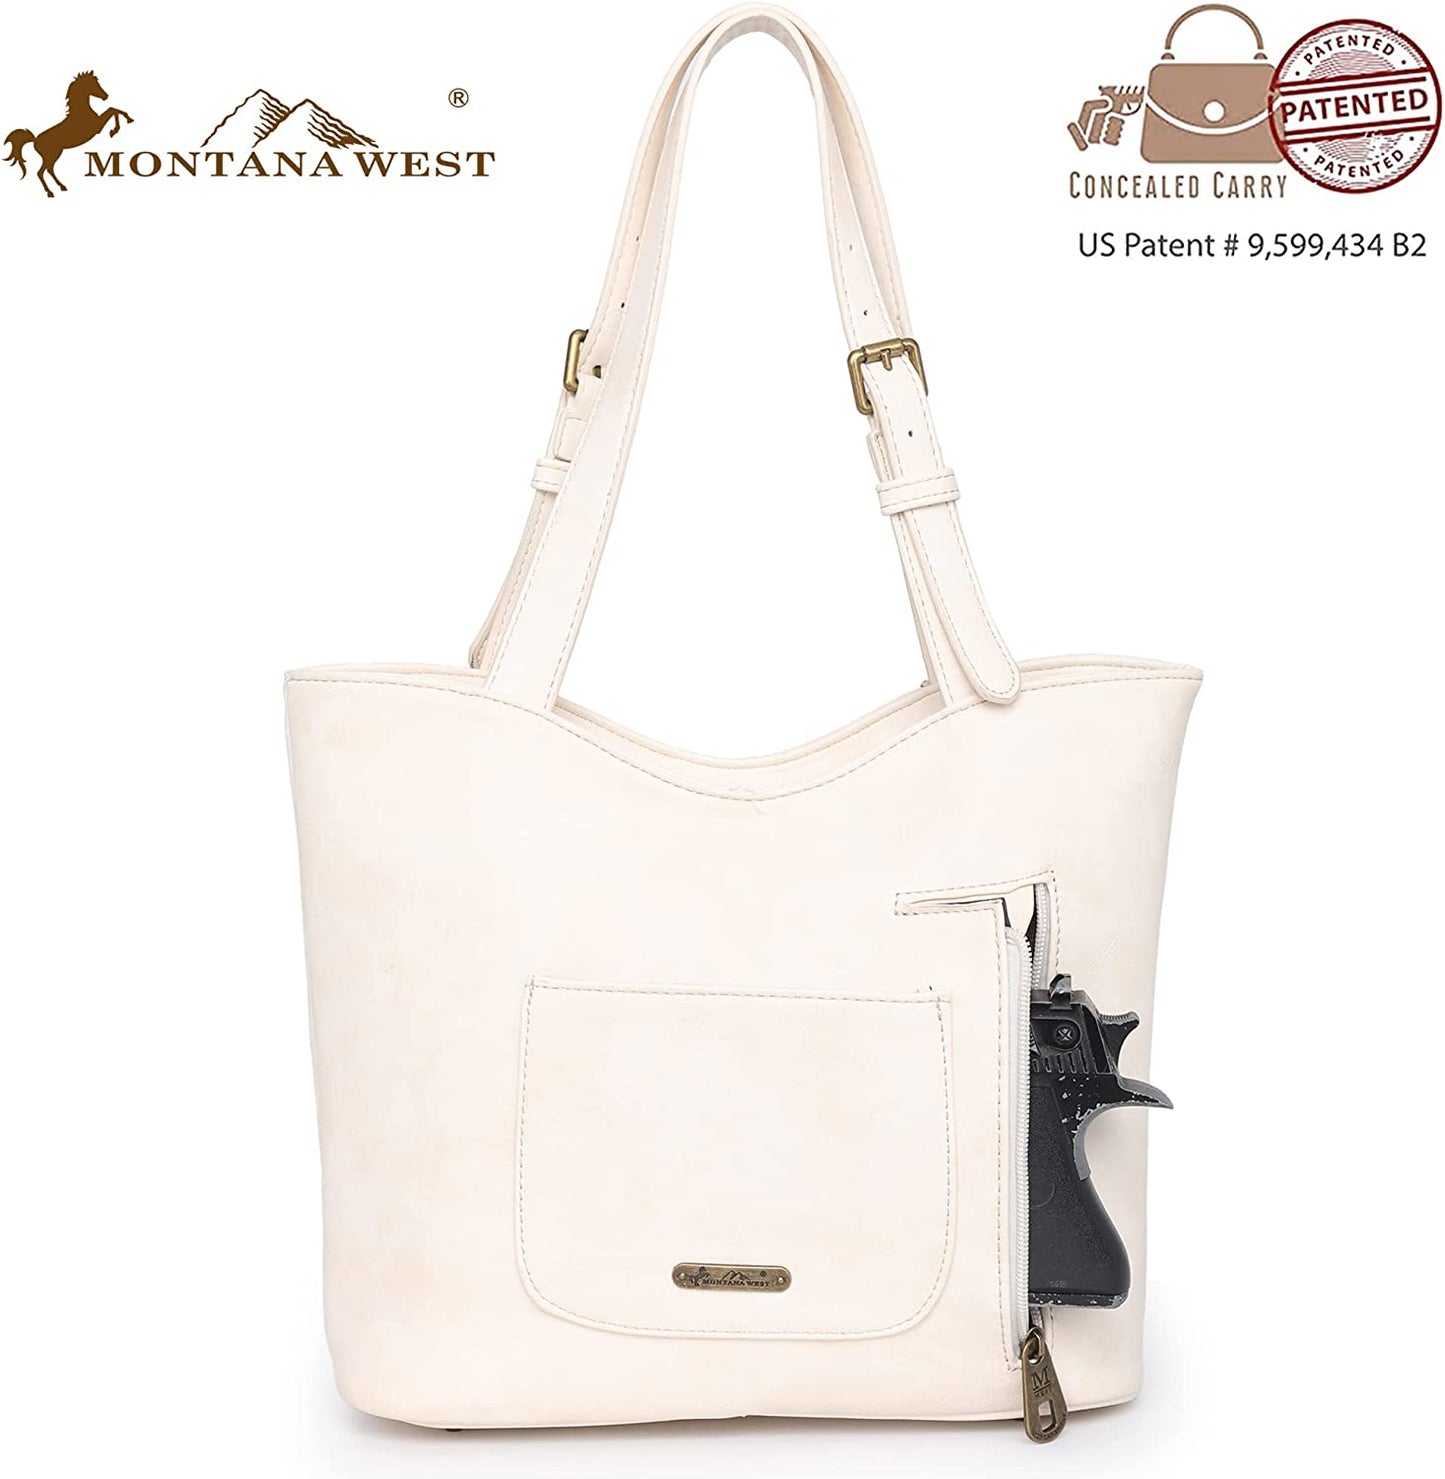 Montana West Western Handbag for Women Leather Embroided Shoulder Bag